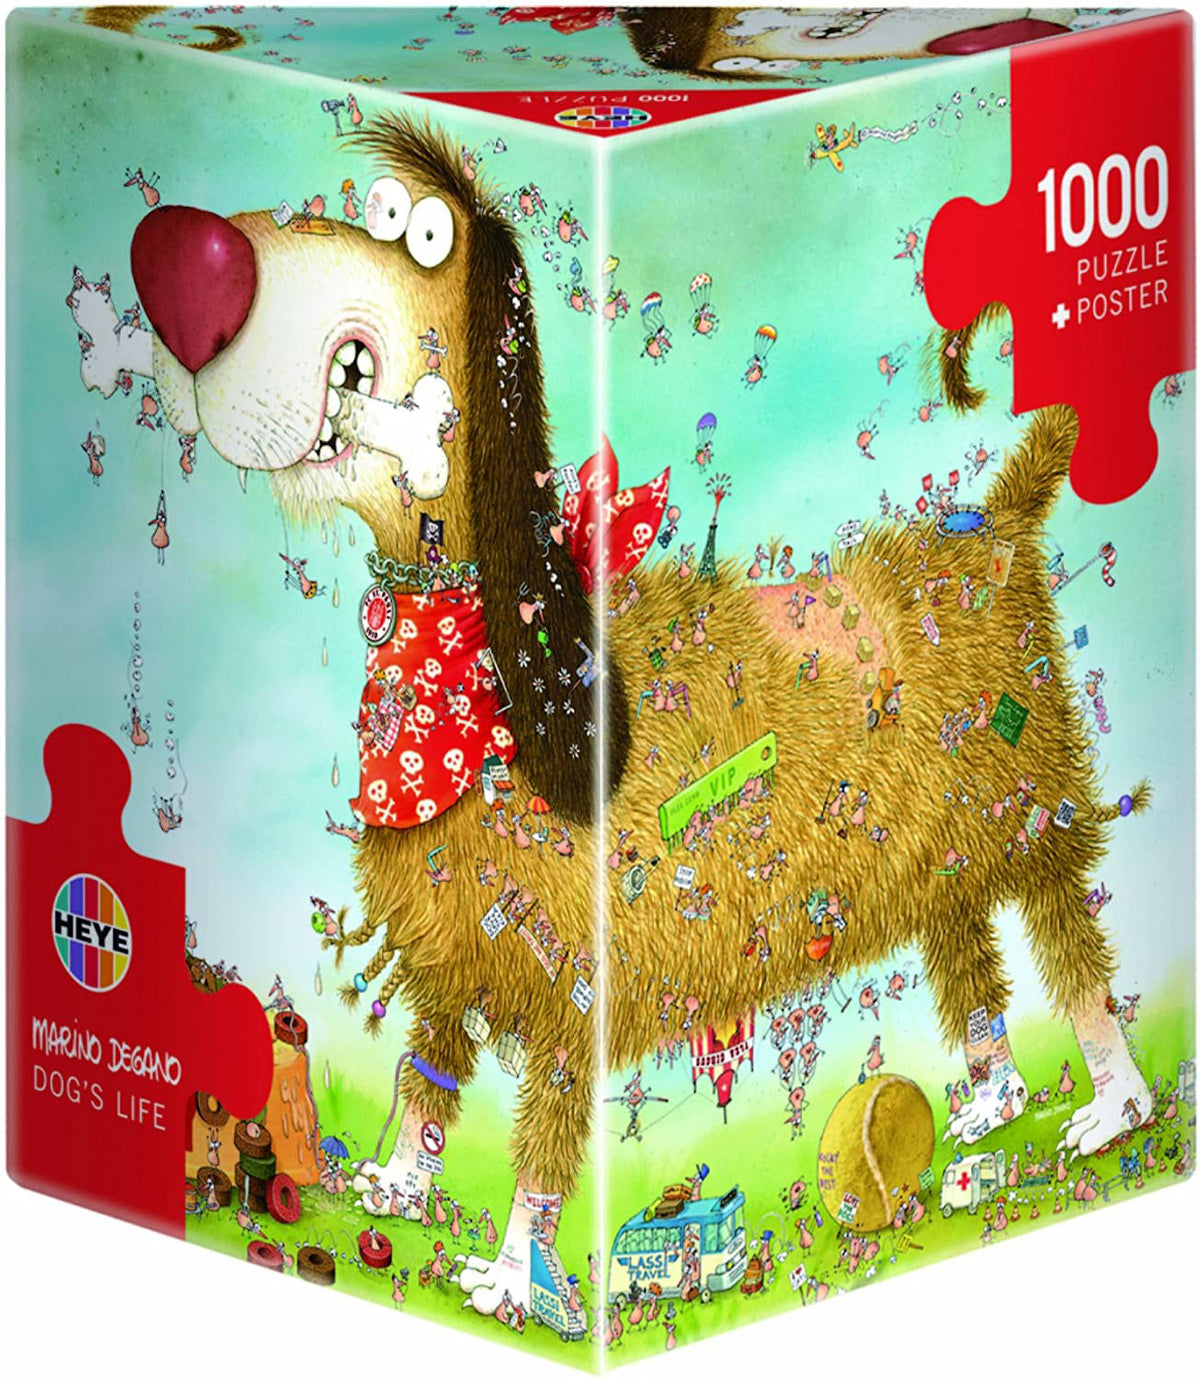 Heye - Dogs Life: 1000 Piece Jigsaw